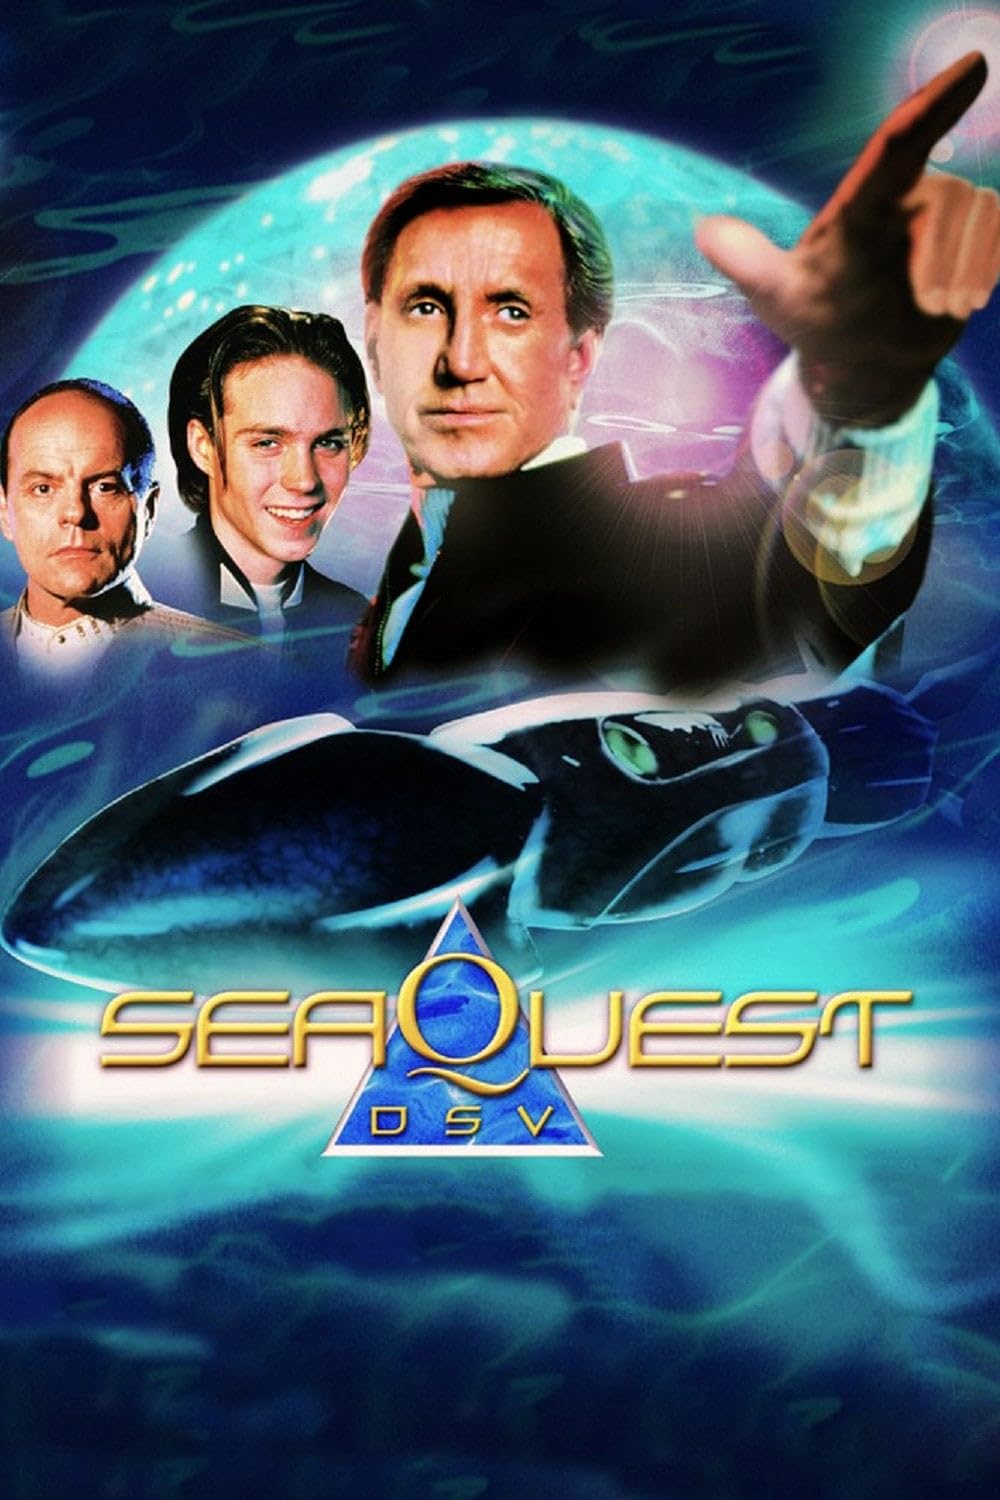 SeaQuest 2032